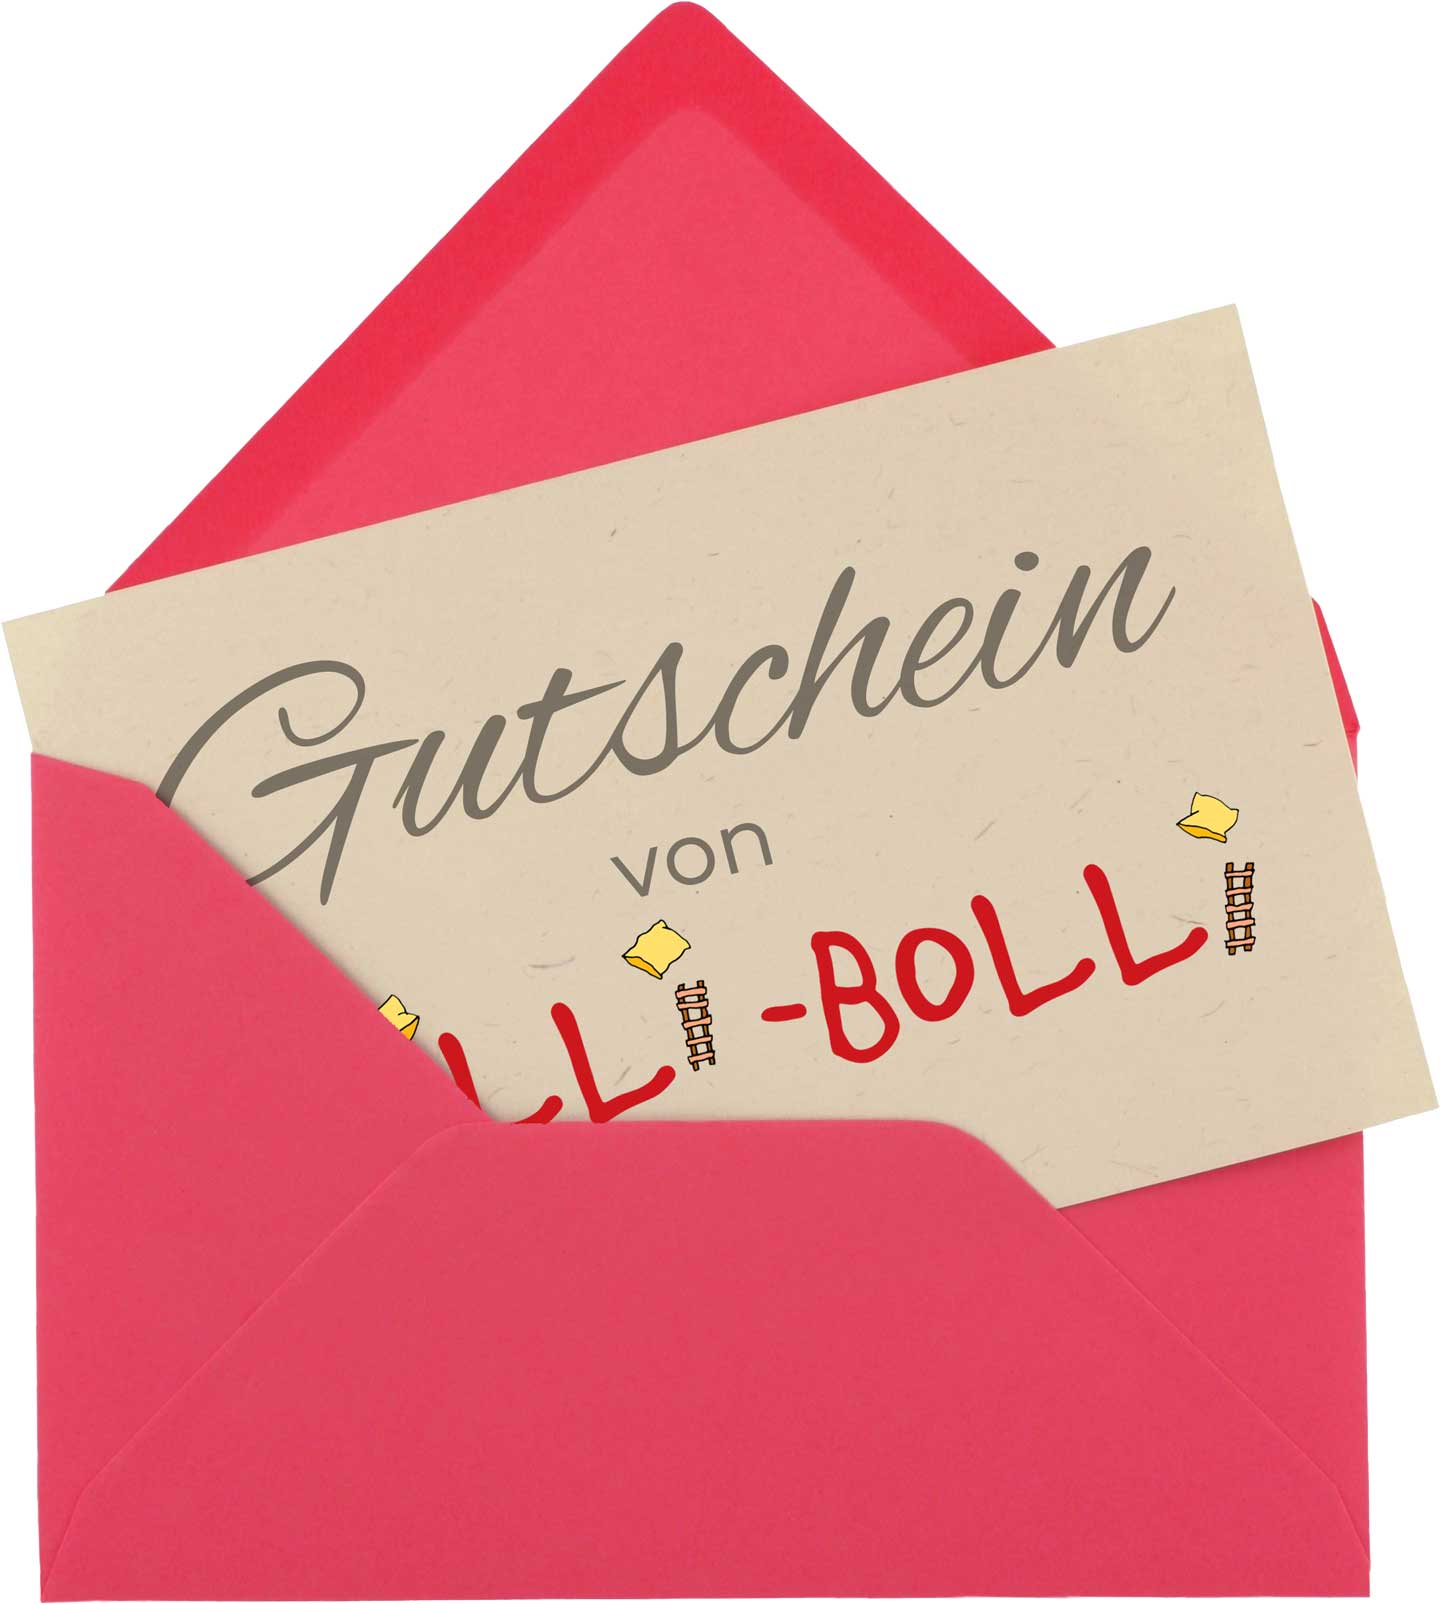 Geschenk­gutschein von Billi-Bolli (Tipps & Ideen)